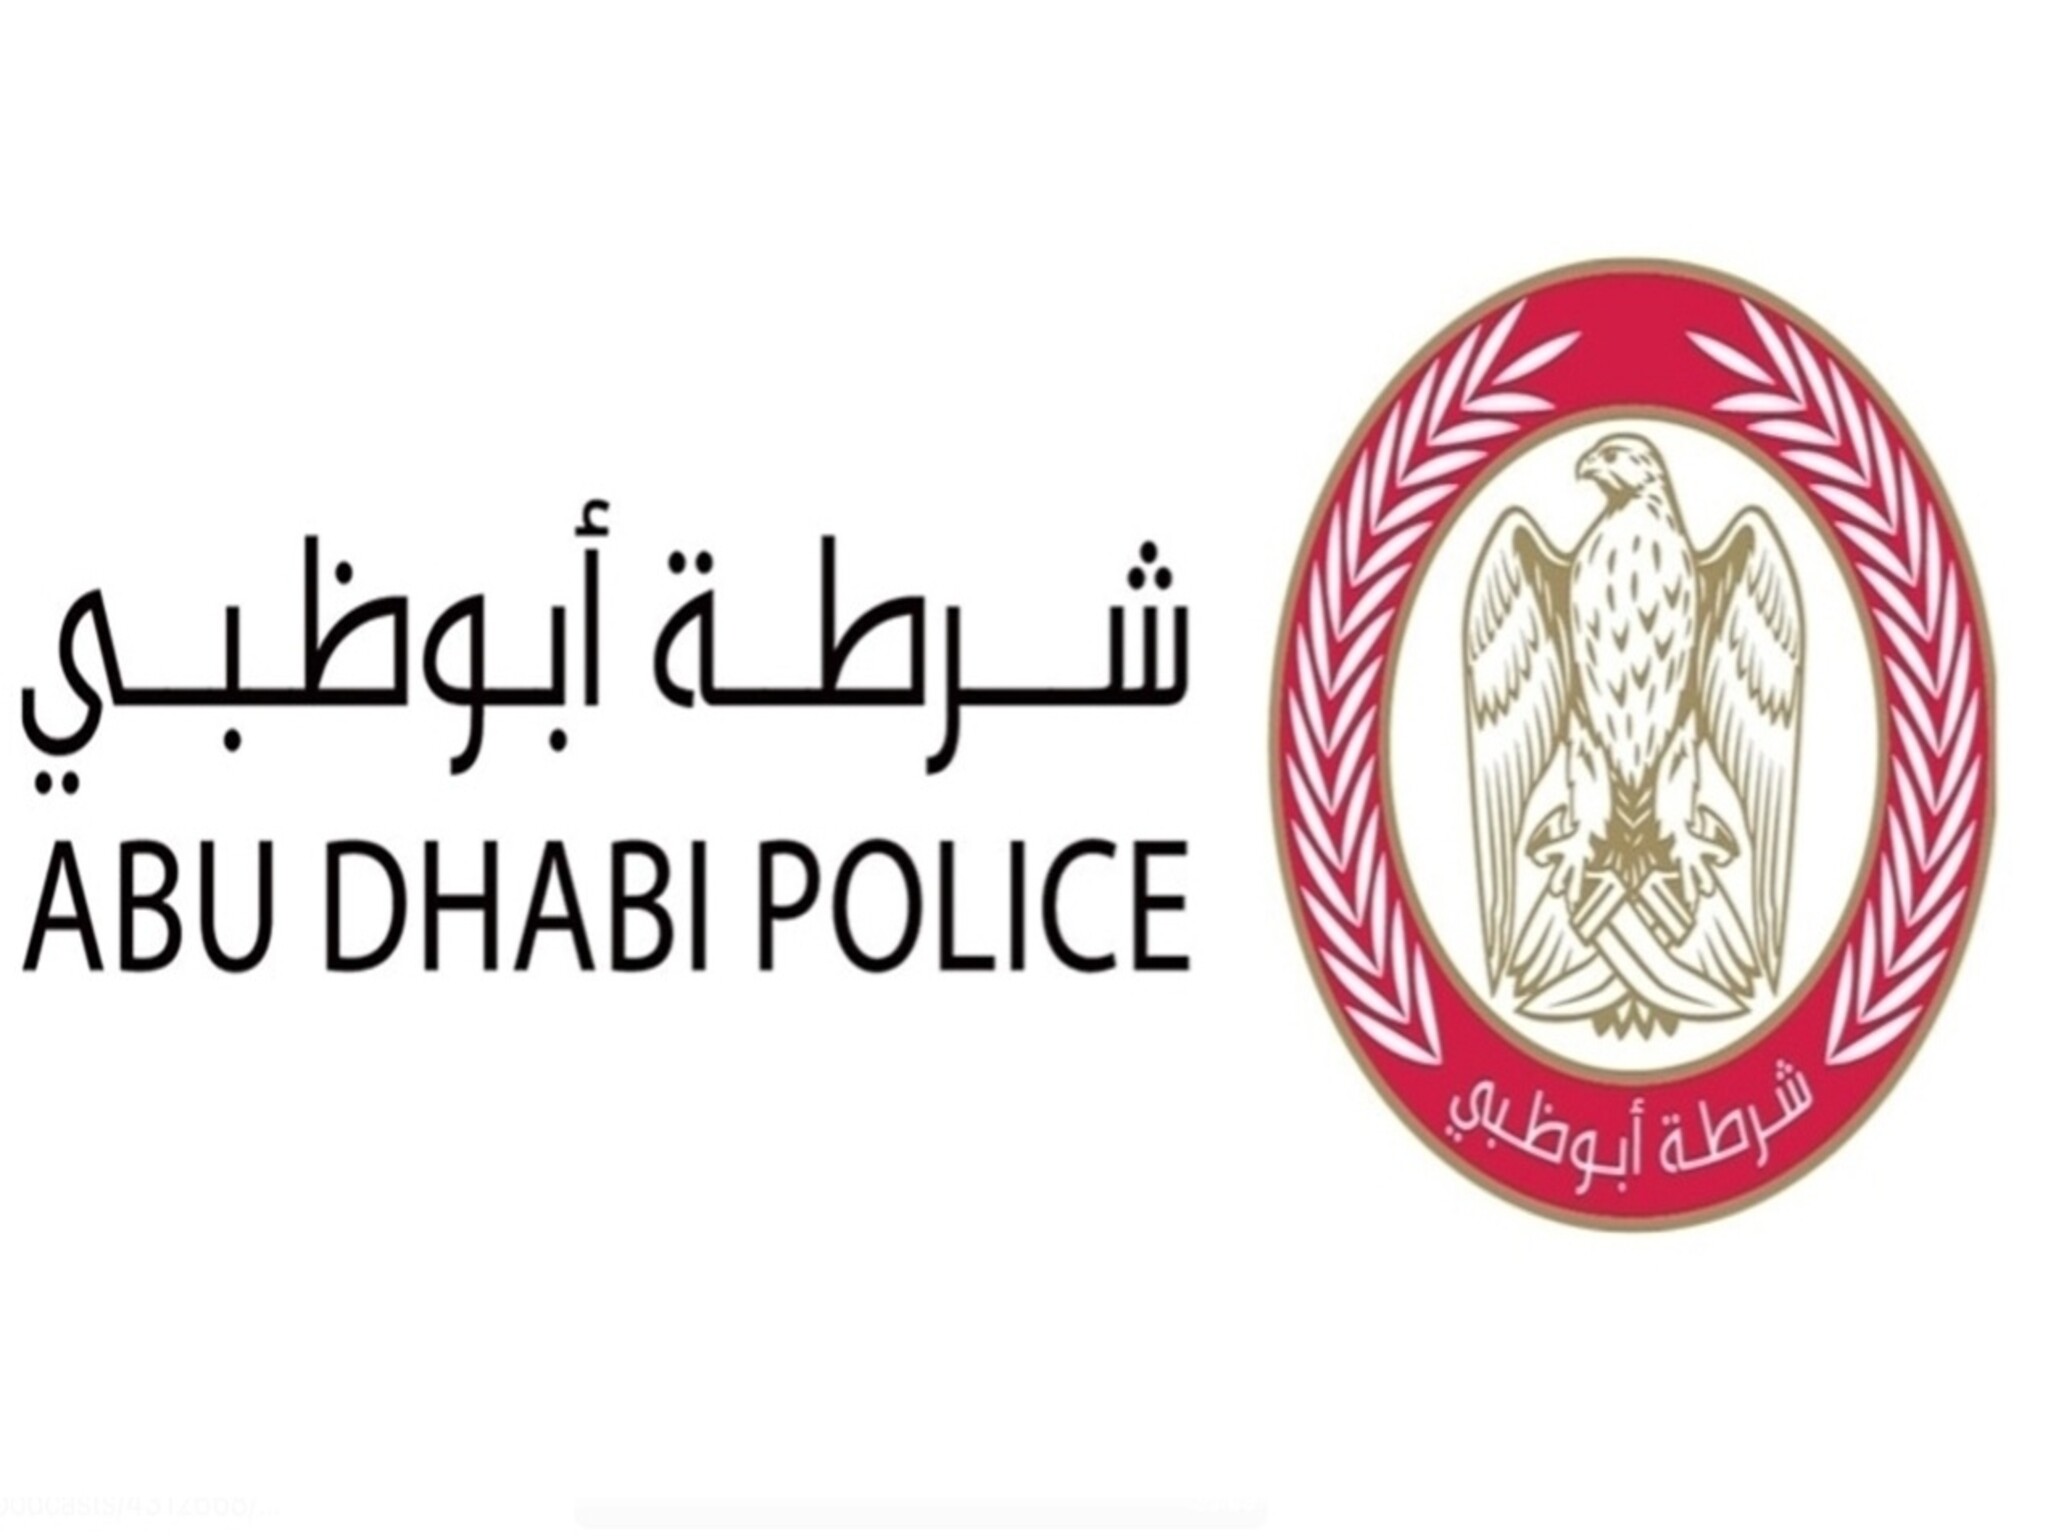 شرطة أبوظبي تصدر بعض التنبيهات لسائقي المركبات عبر تقنية CGI